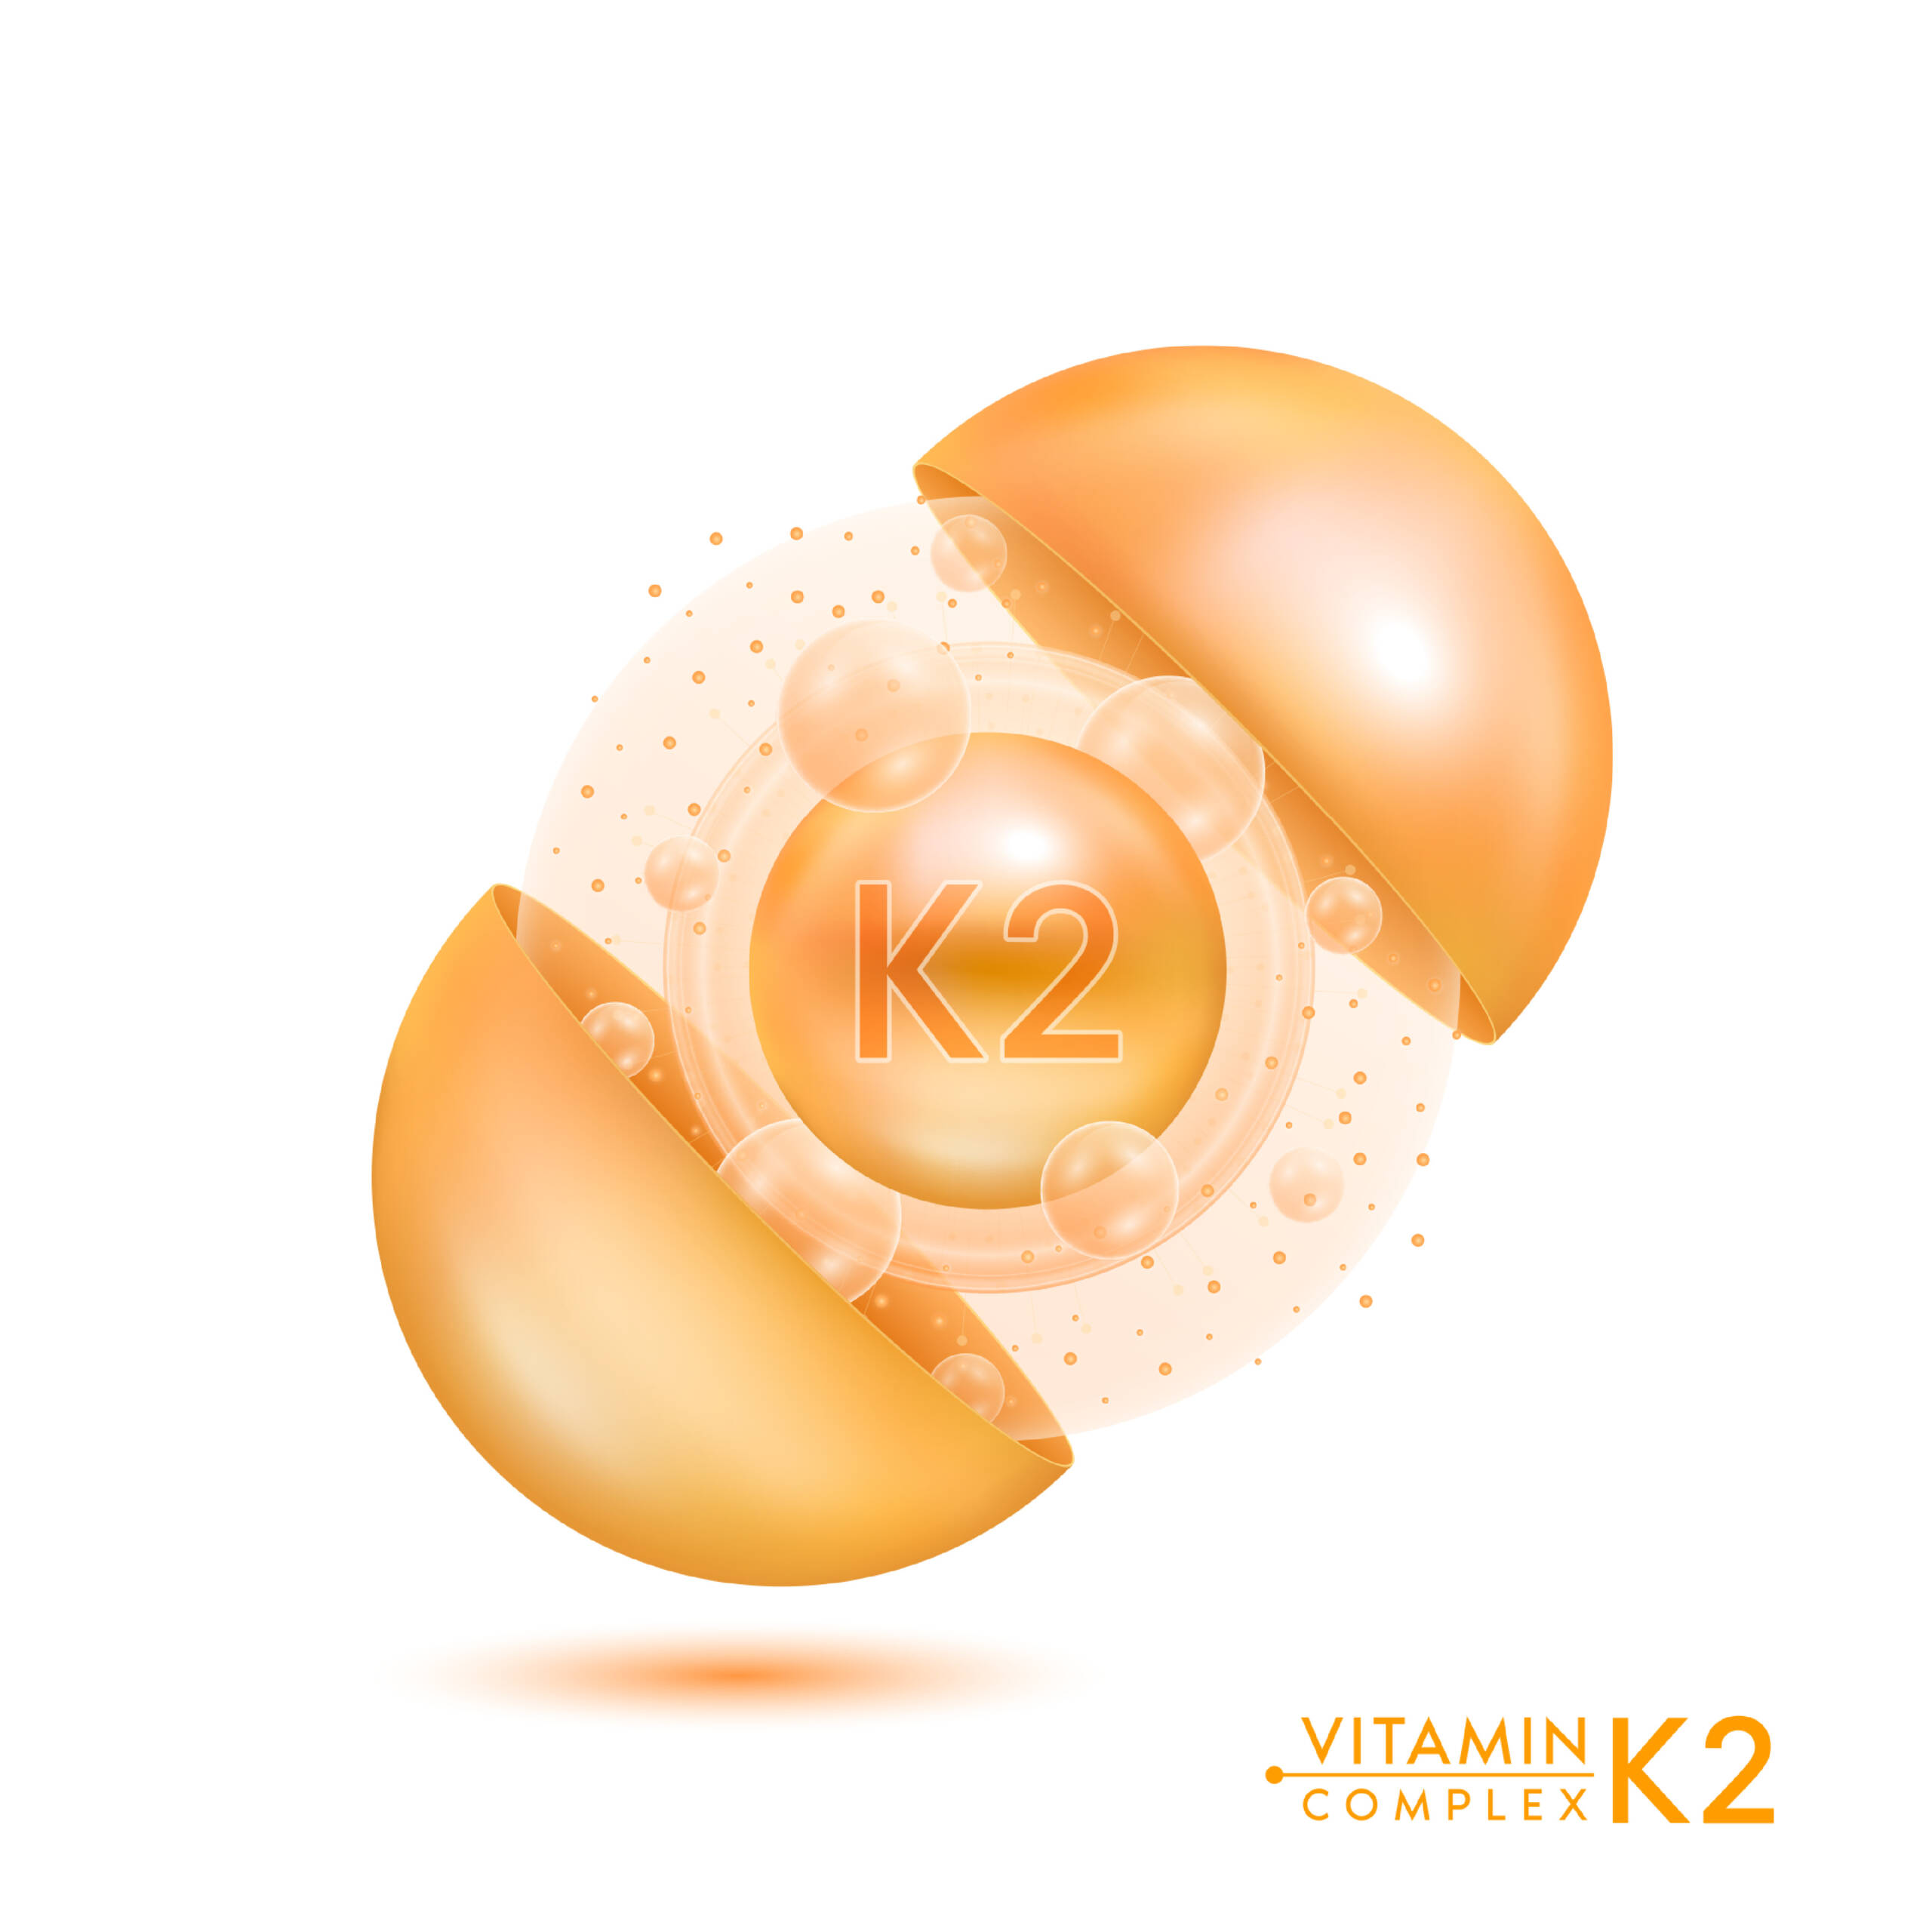 Vitamin K2 Bone Health